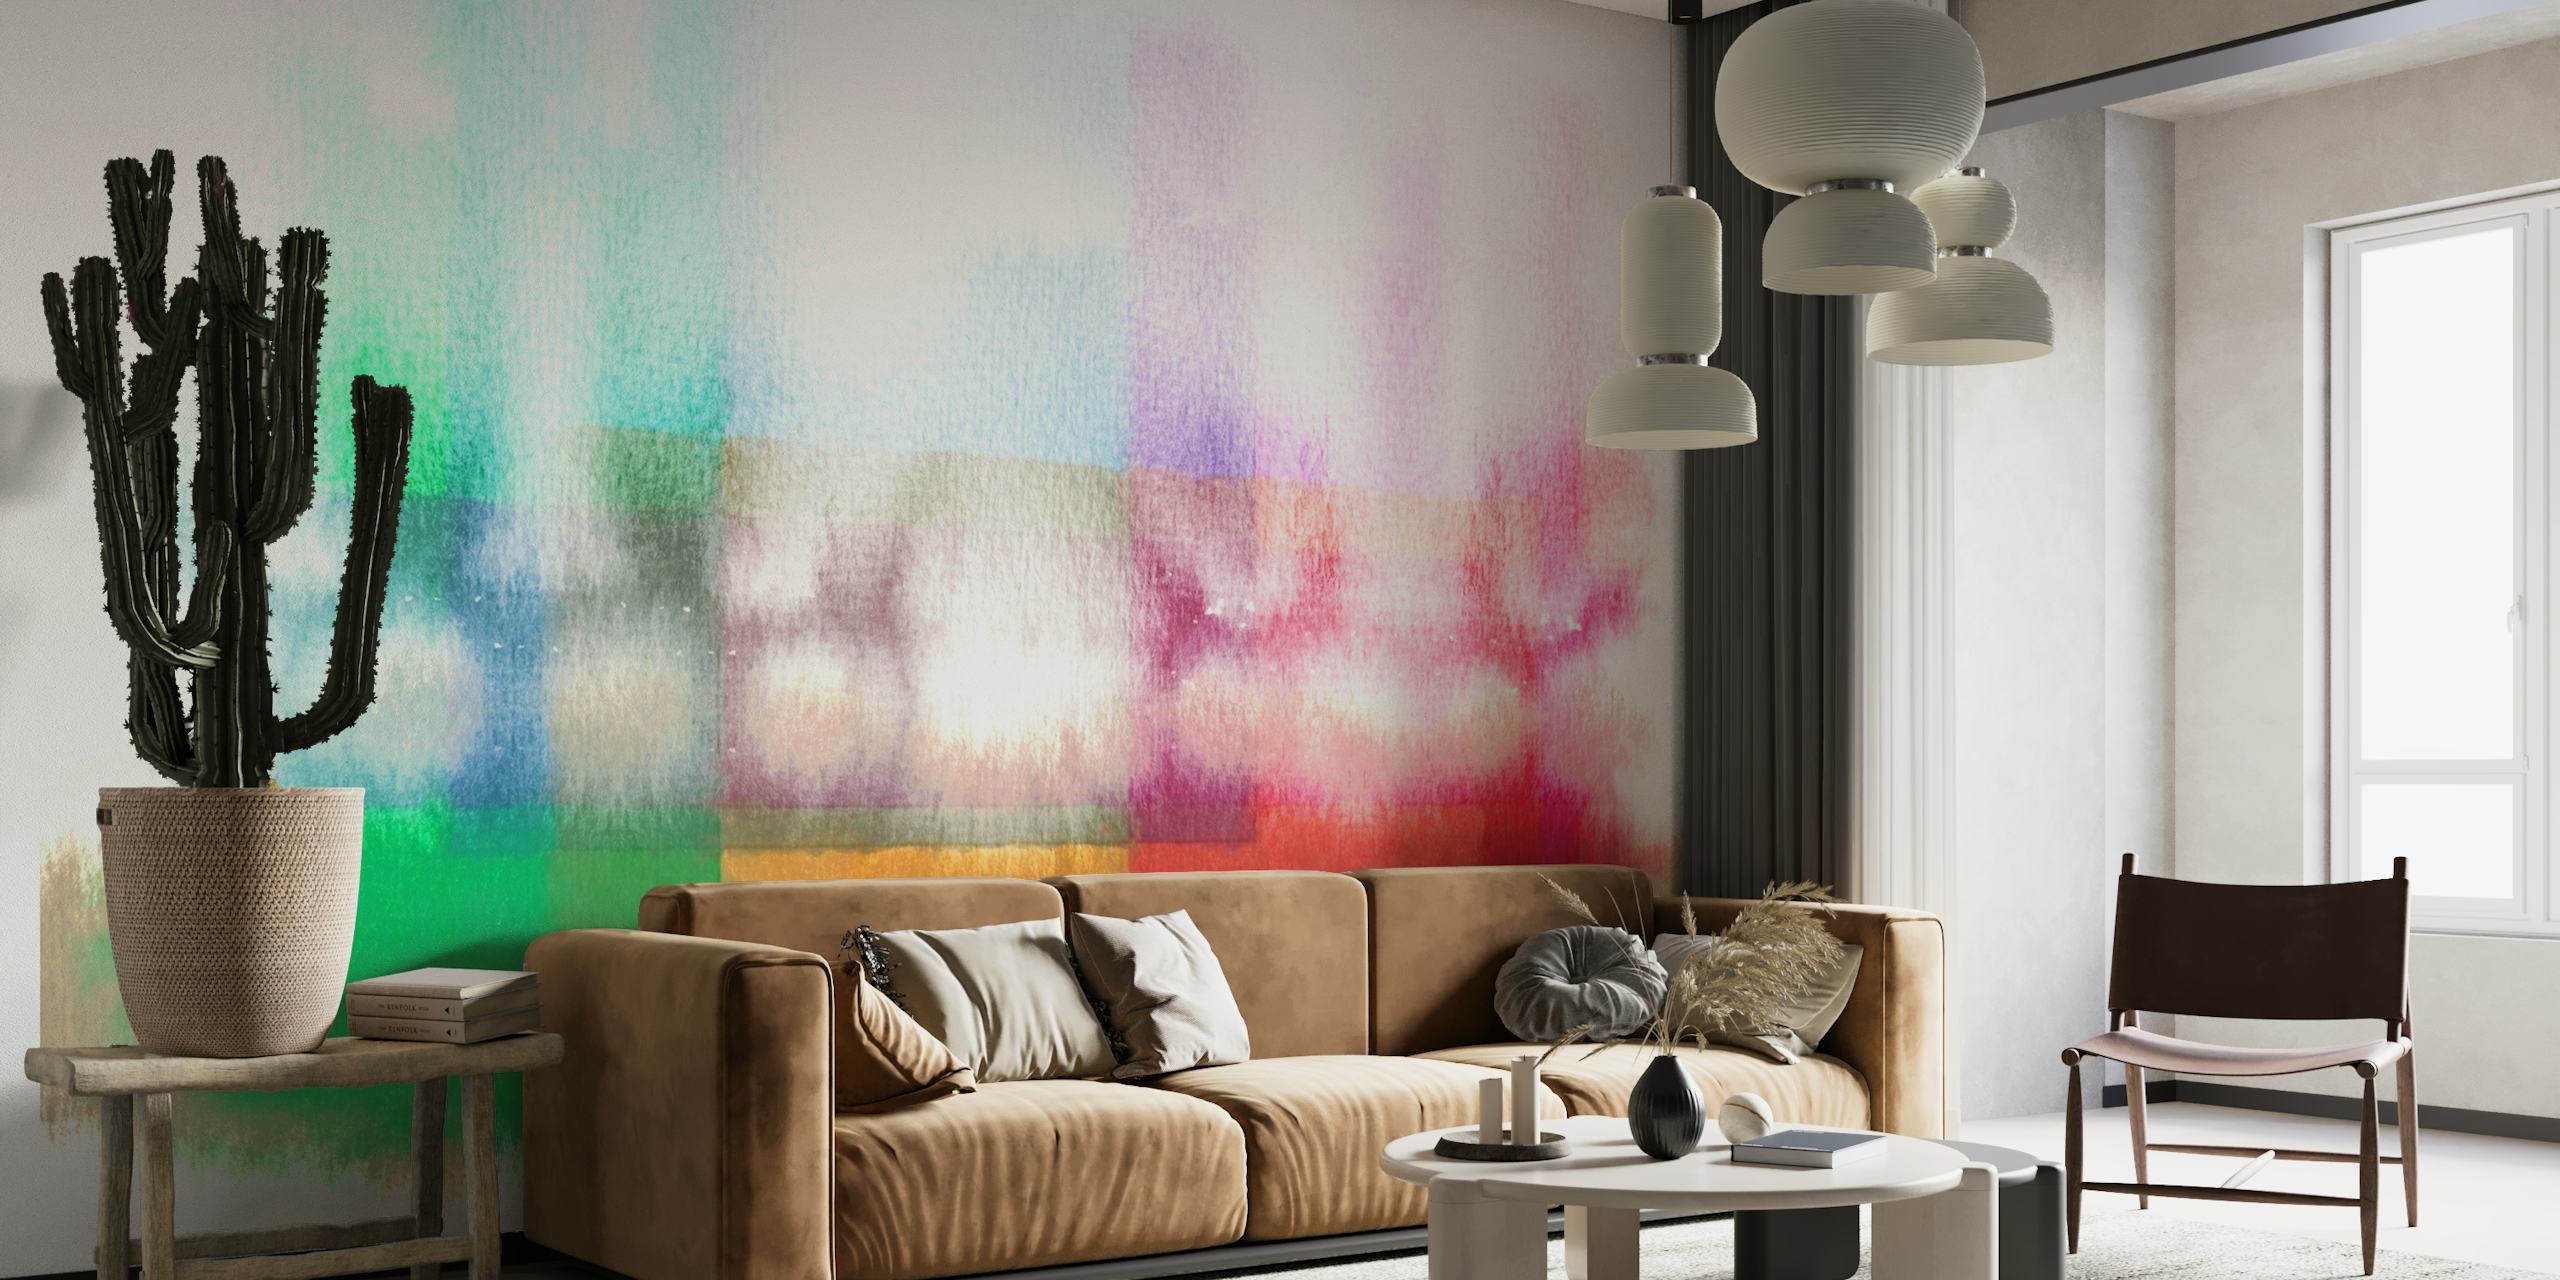 Abstracte zomerse aquarelhorizon muurschildering met een mix van blauwe, roze en aardse tinten.